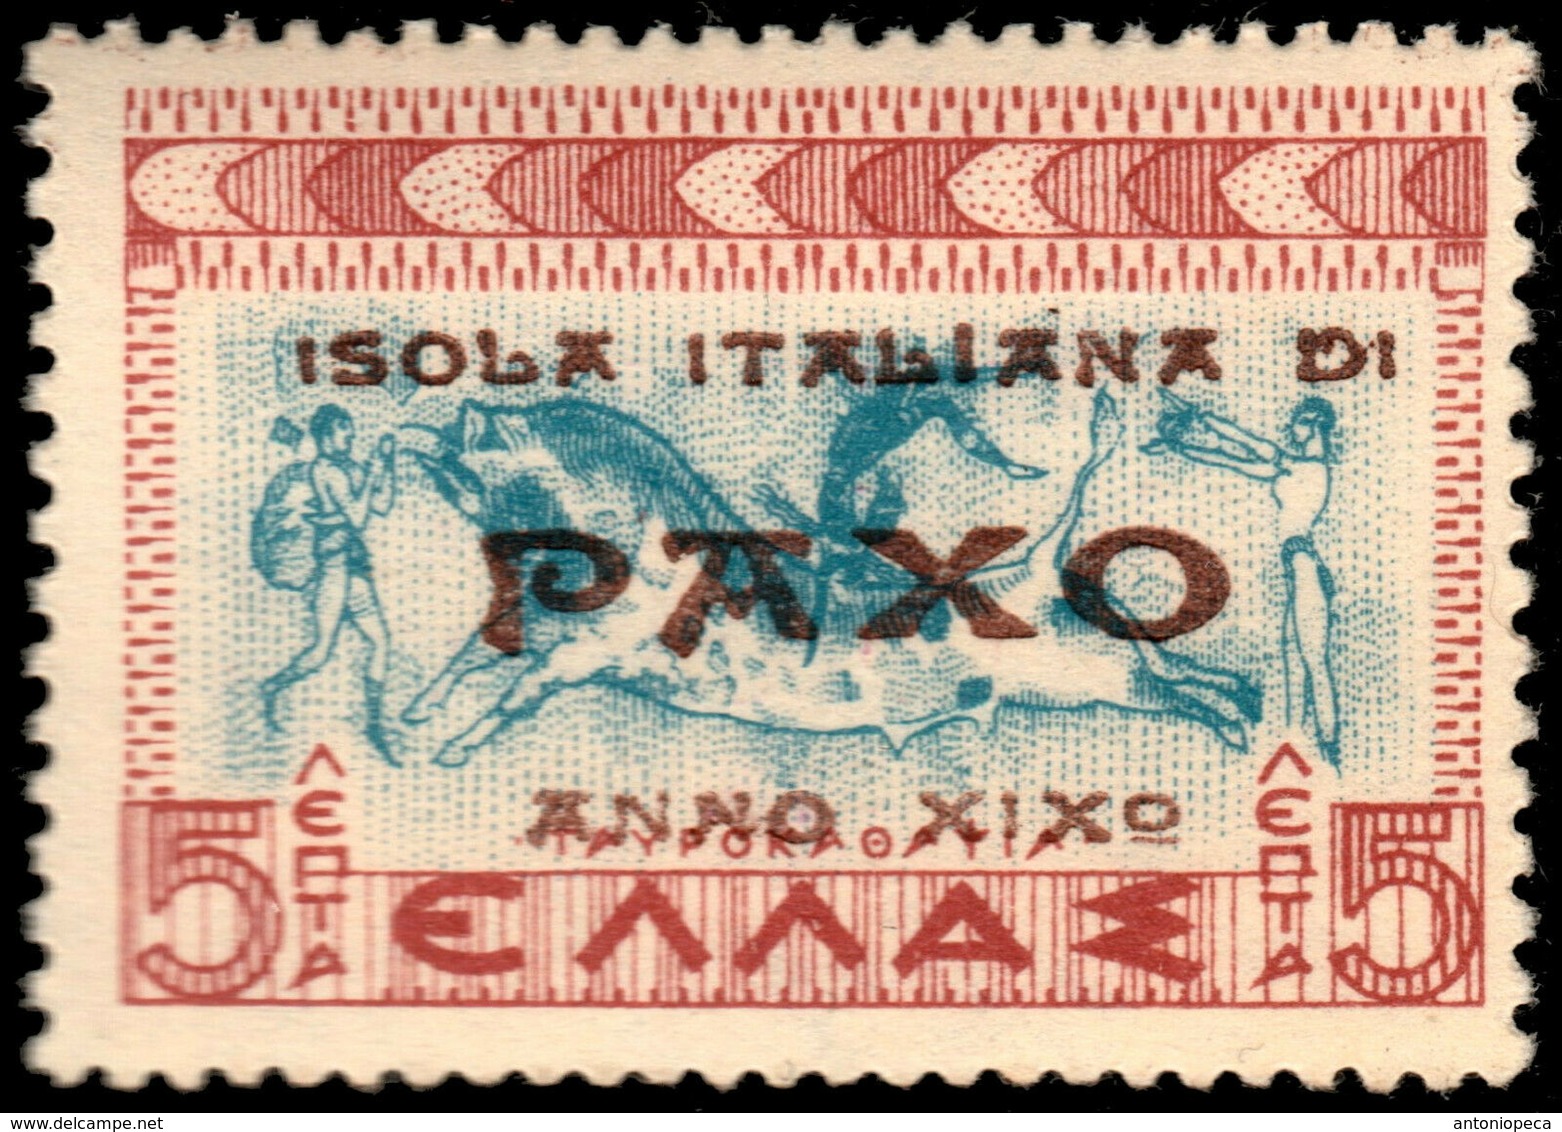 ITALY 1943 - OCC. IONIAN ISLANDS PAXO / PAXOS - ** MNH - Corfù